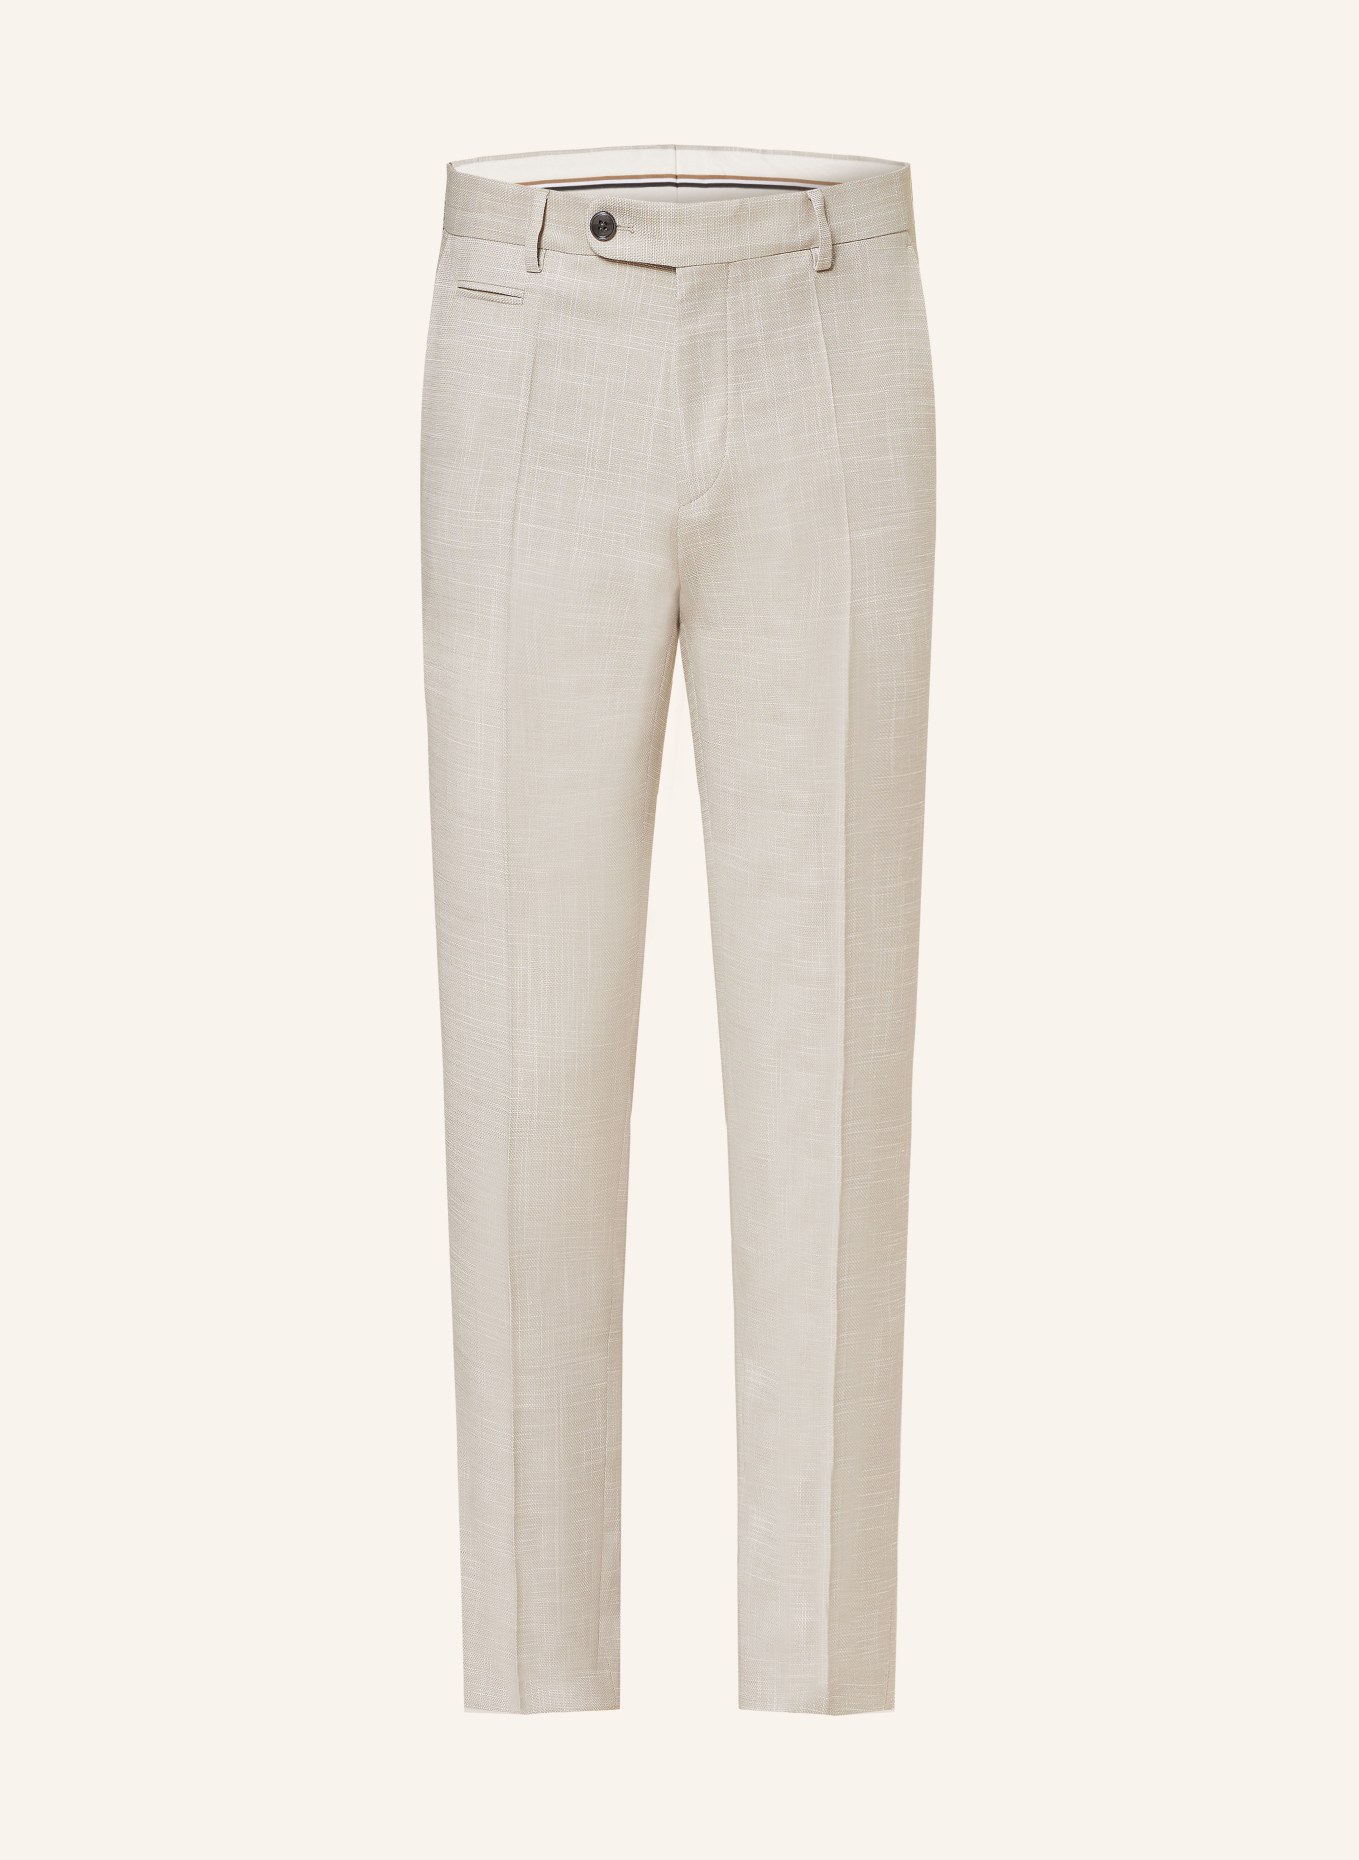 BOSS Anzughose GENIUS Slim Fit, Farbe: 131 Open White (Bild 1)